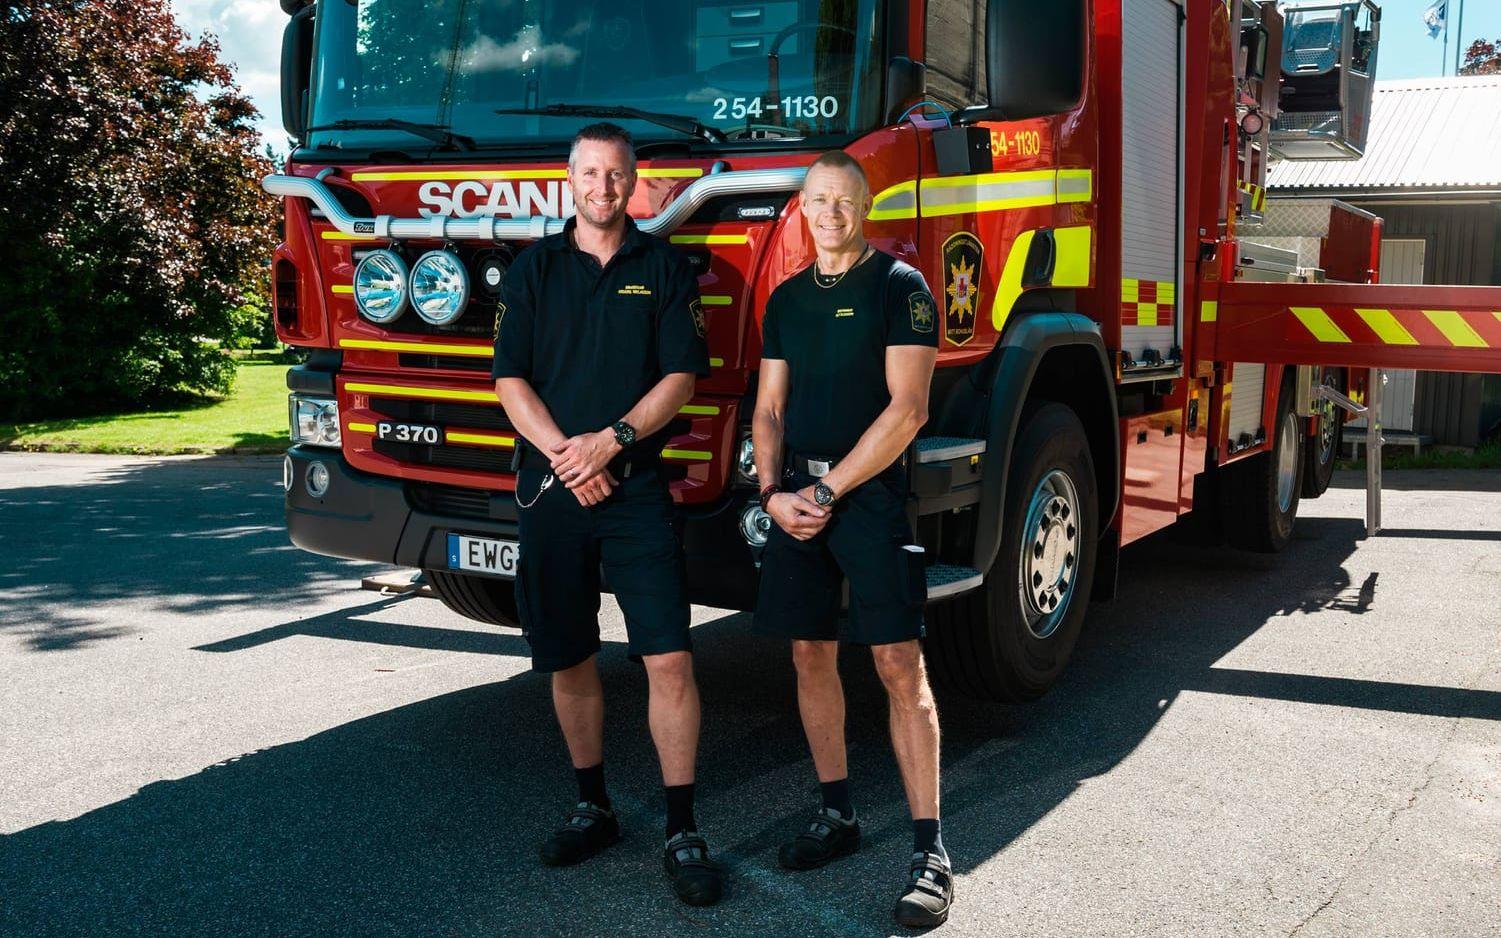 Går du till jobbet fast du är sjuk? Anders Niklasson och Ulf Eliasson, brandmän:– På vårt jobb måste man vara frisk. Det går inte att genomföra en rökdykning med feber, det är varmt nog ändå. Är man pyttelite förkyld kan det gå att vara chaufför en dag, men aldrig med en riktig bondförkylning.